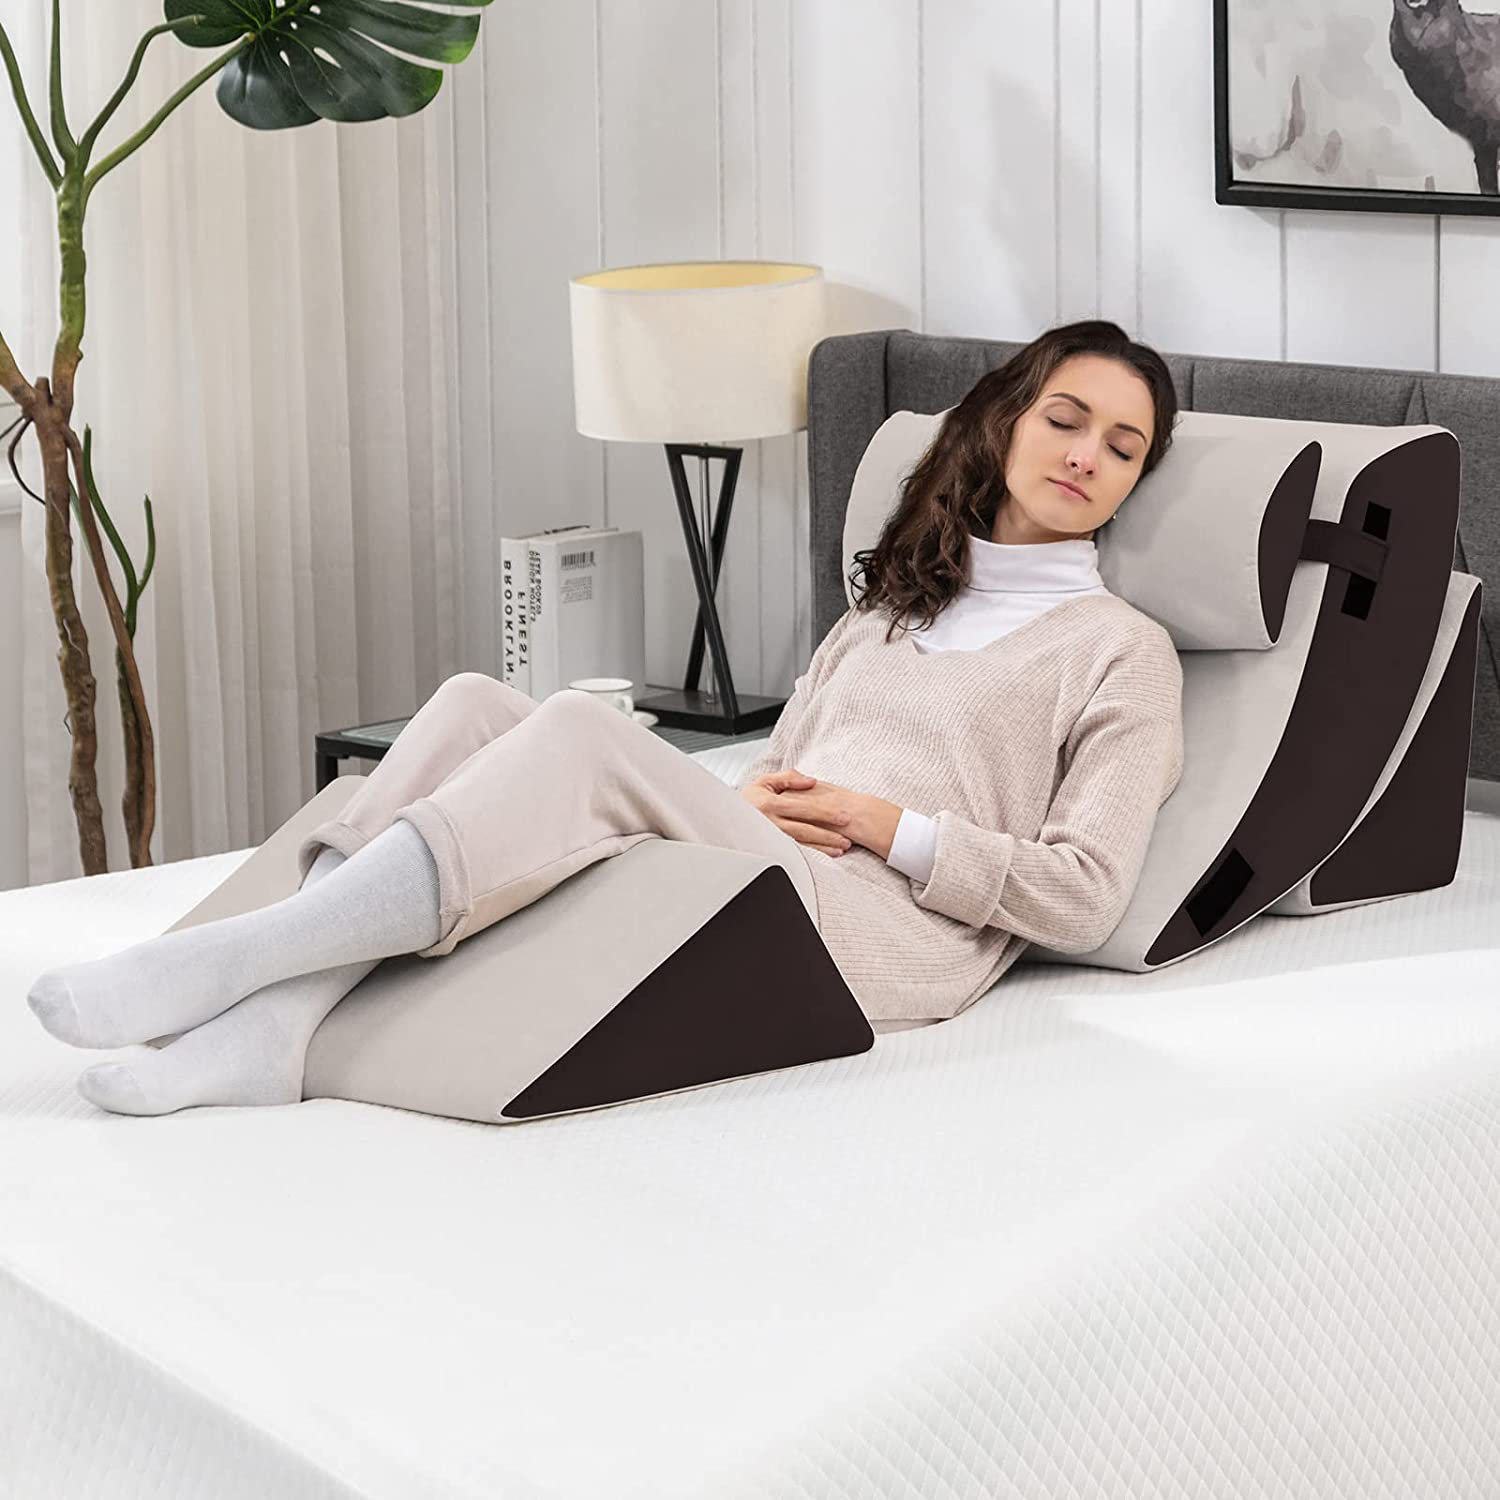 Lazyzizi 6pcs Orthopedic Bed Wedge Pillow Set, Memory Foam Wedge